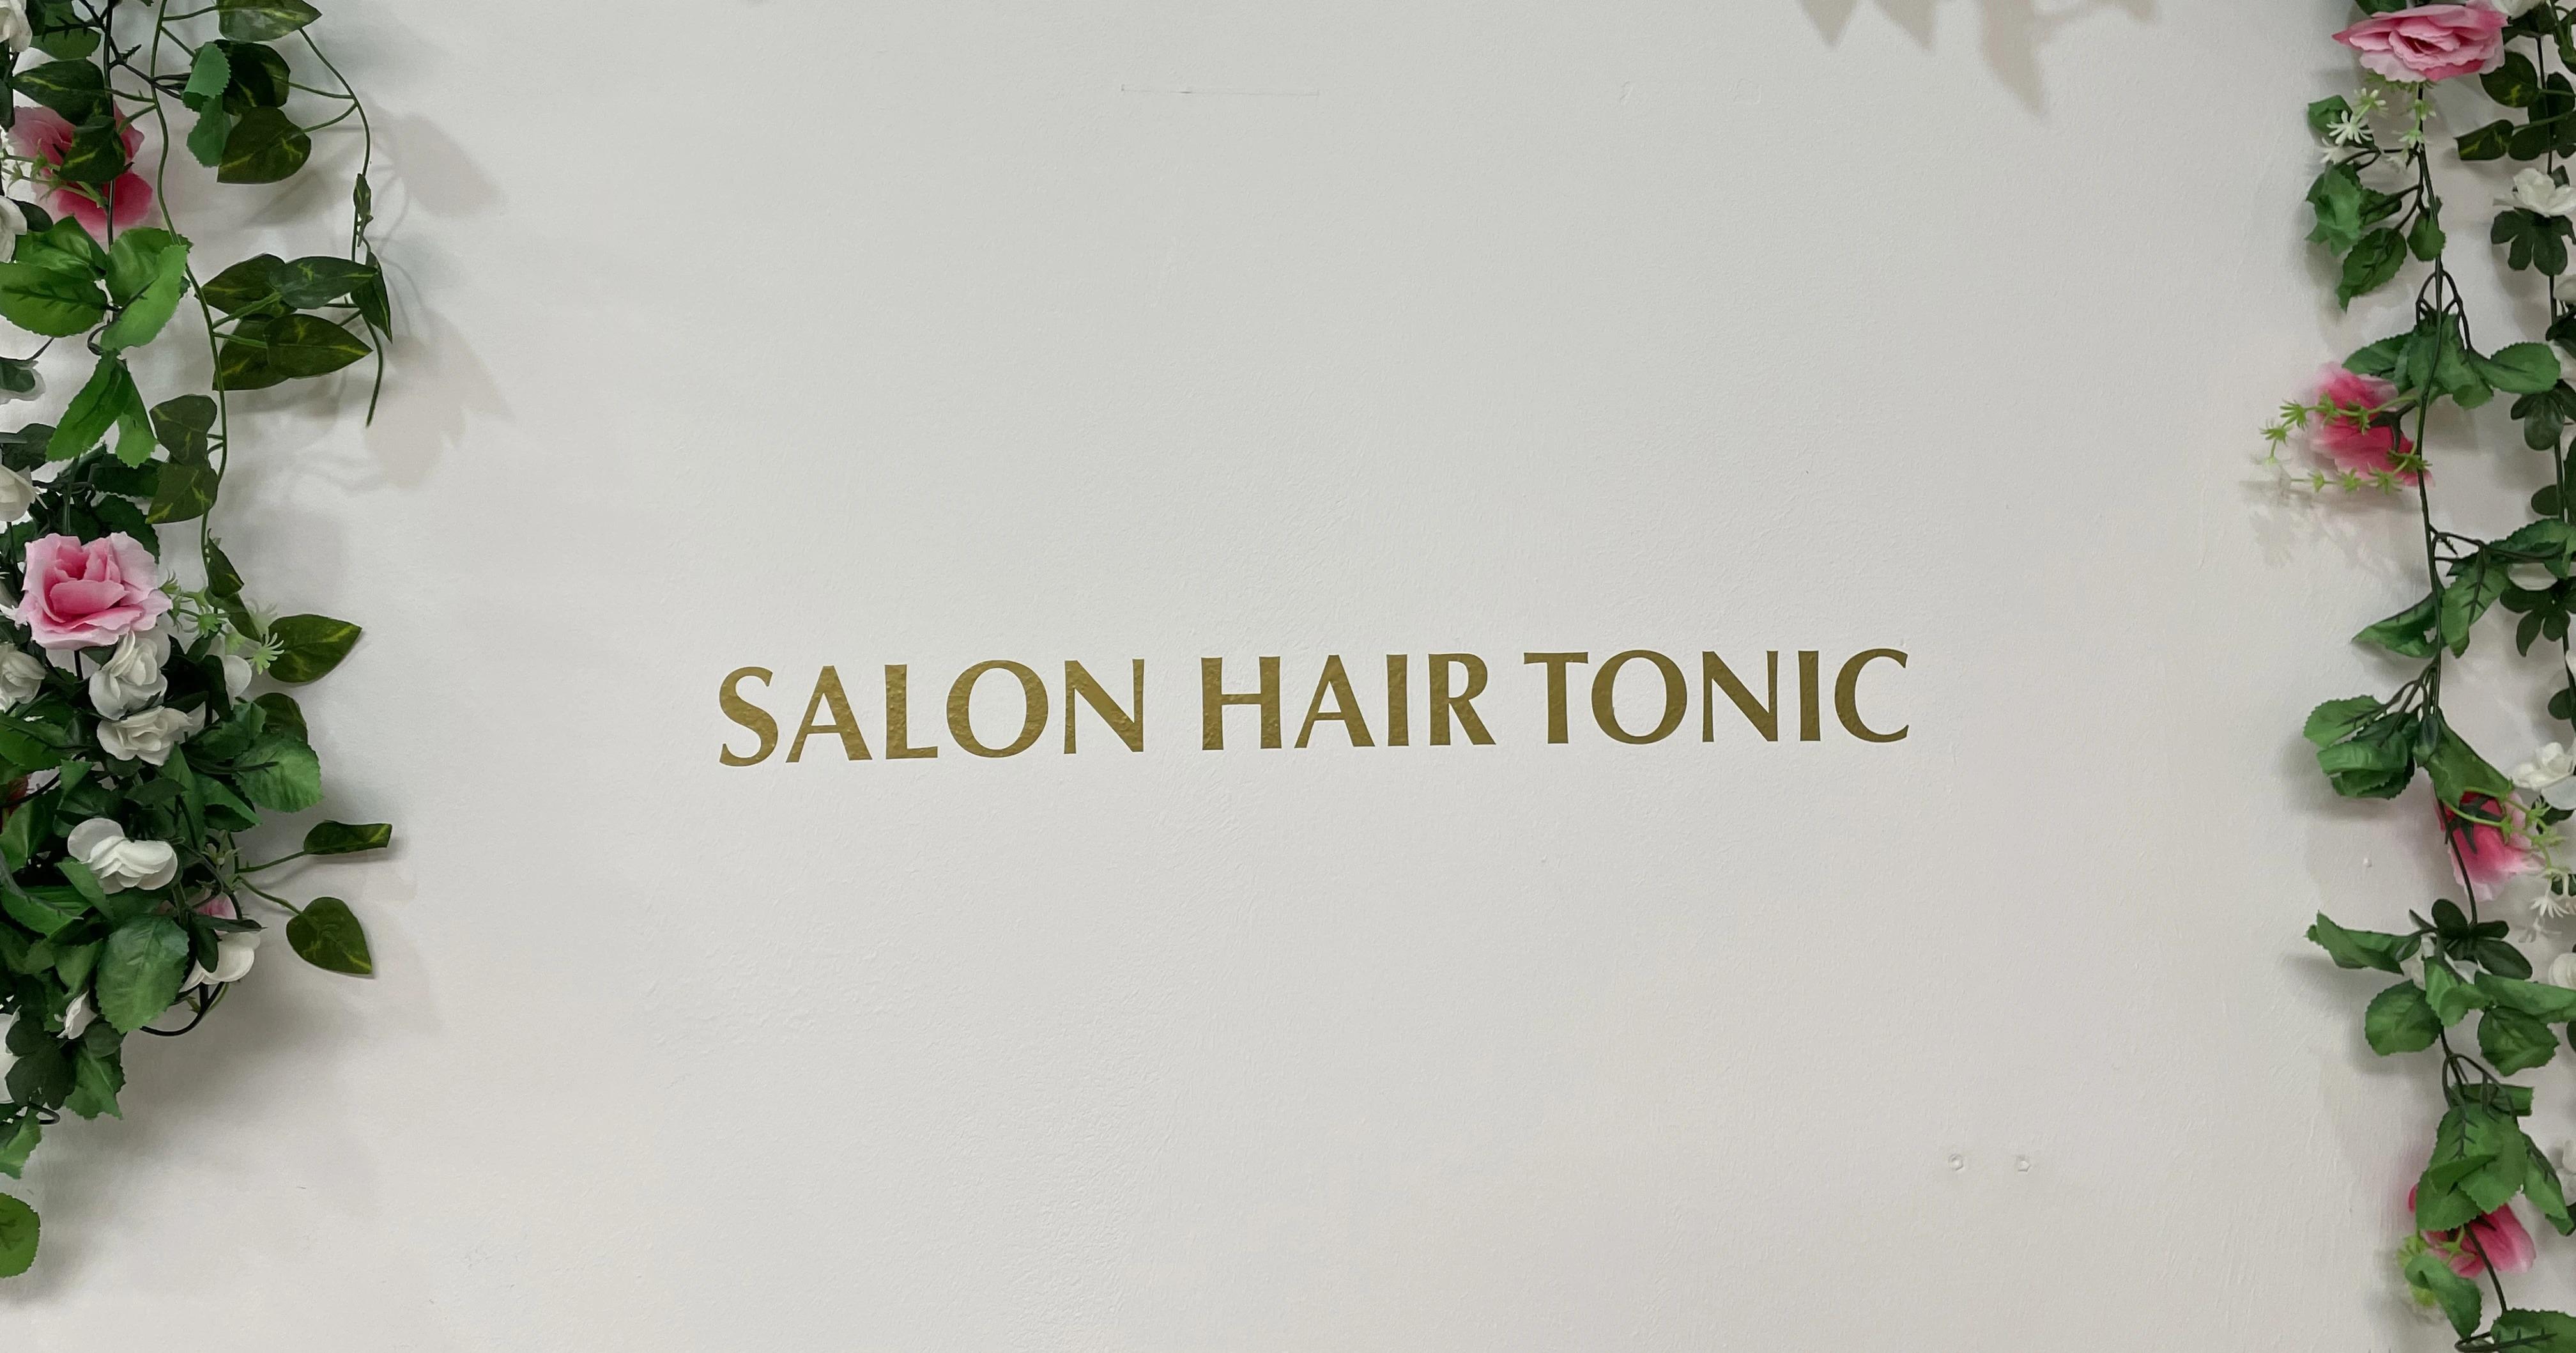 Kundenbild groß 1 Hair Tonic Beauty | Friseursalon und Kosmetik | München